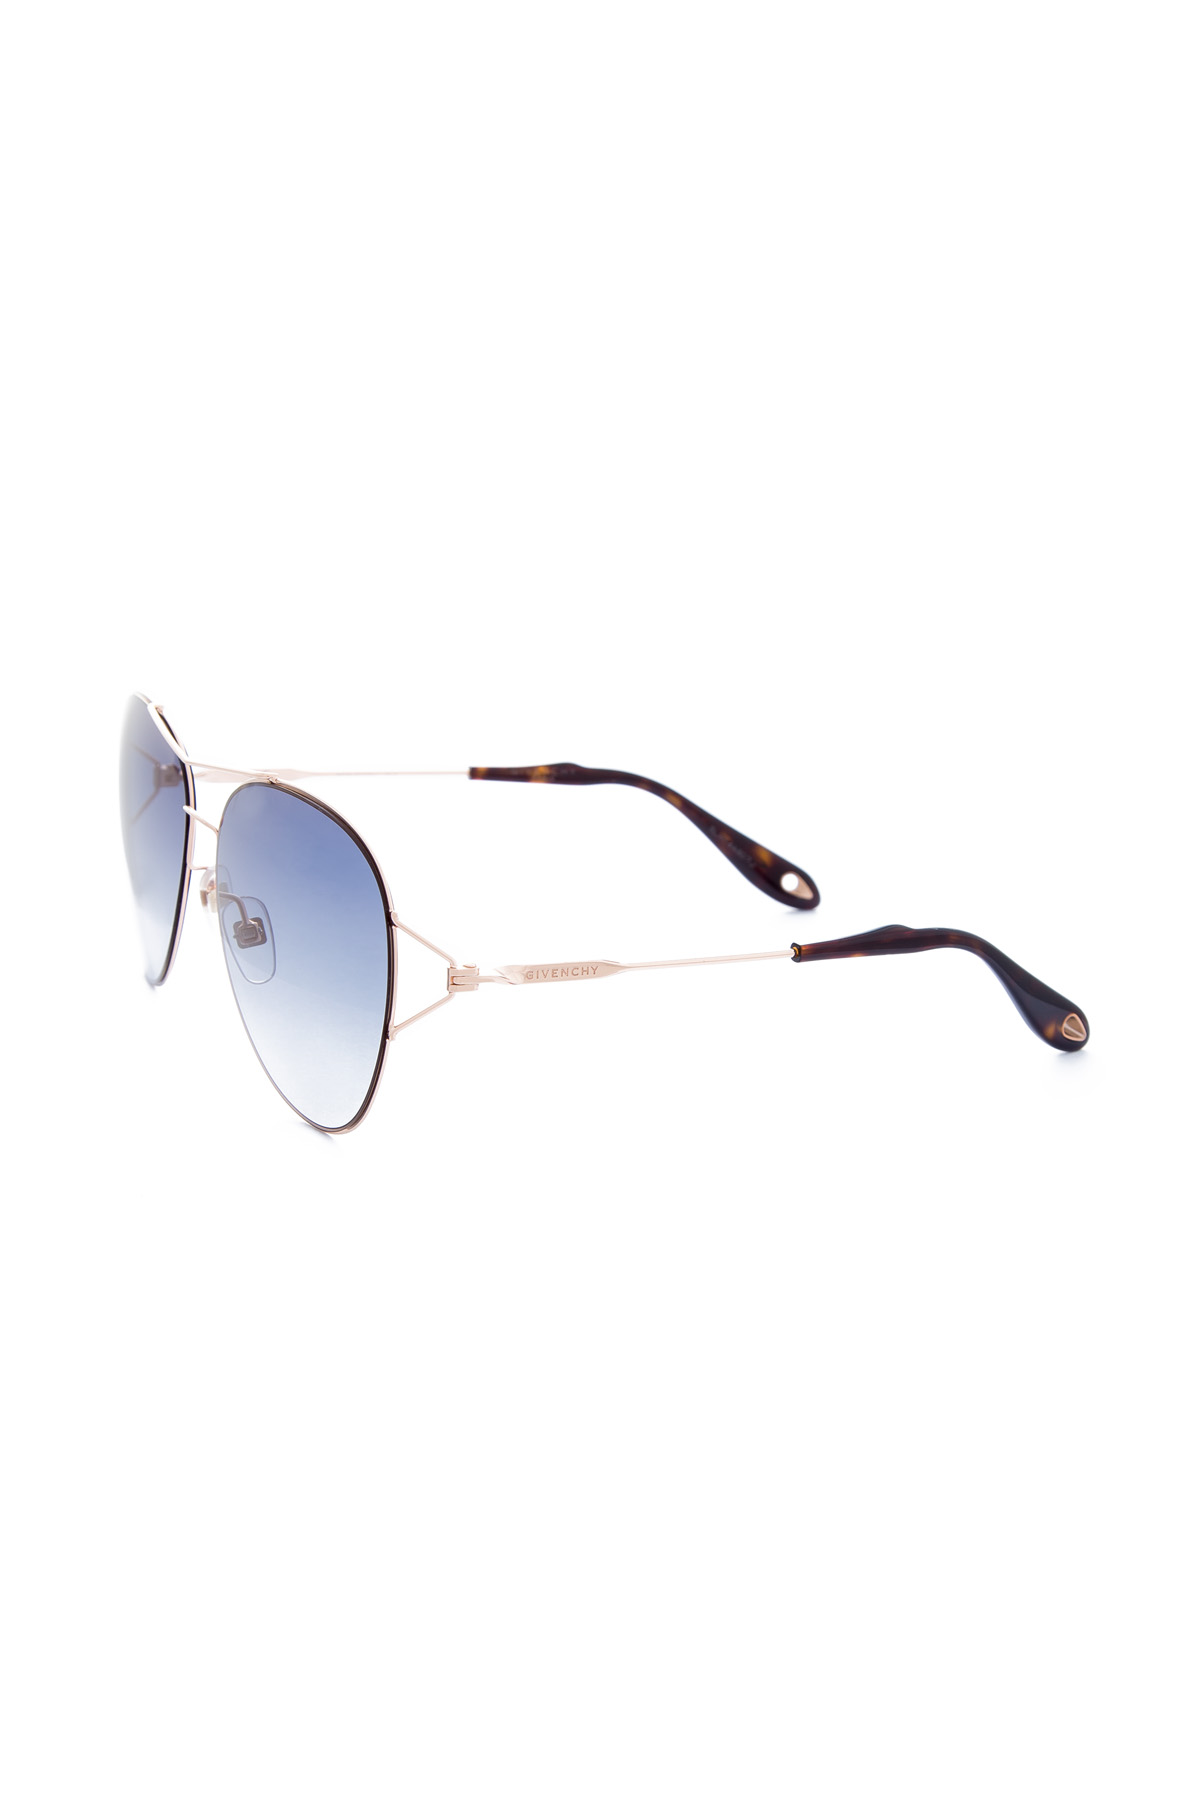 Очки-авиаторы с перемычками из металла золотистого цвета GIVENCHY (sunglasses), размер 36 - фото 2